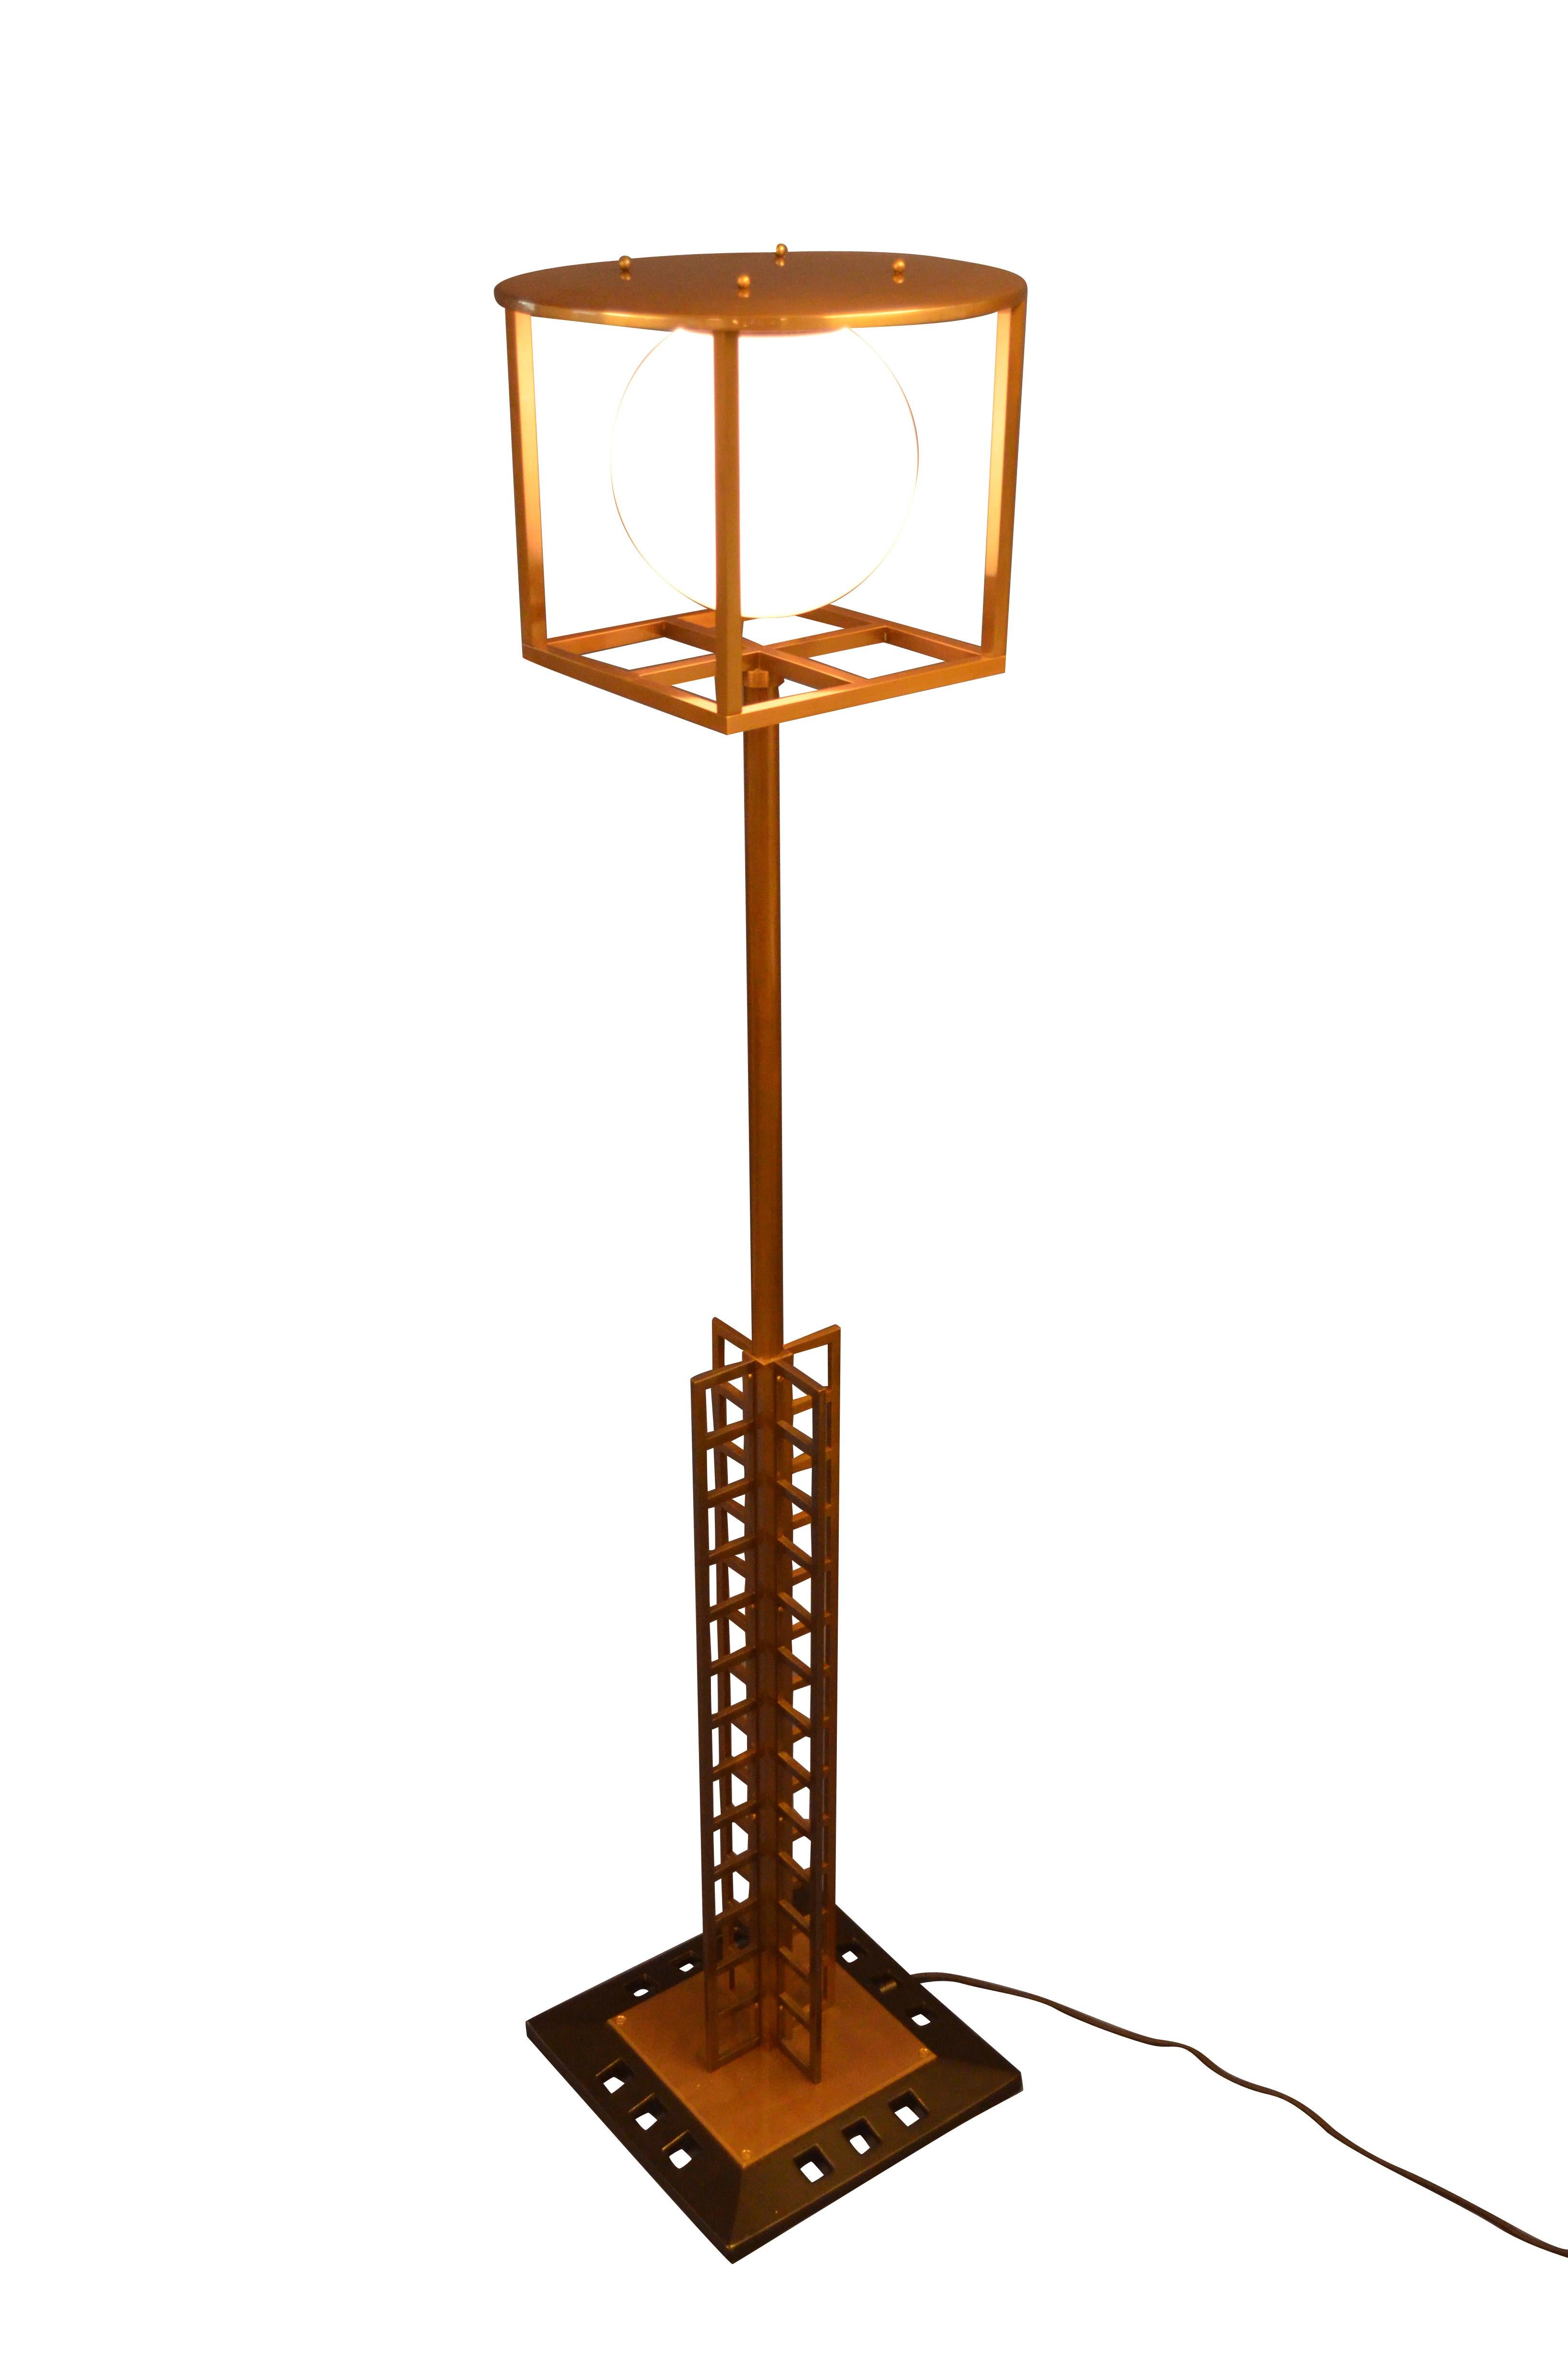 Conçu à l'origine comme lampadaire pour la Glasgow School of Art, ce lampadaire témoigne de la grande influence viennoise, Mackintosh ayant exposé en 1900 avec sa femme Margaret MacDonald à la Sécession viennoise, sous la direction de Josef